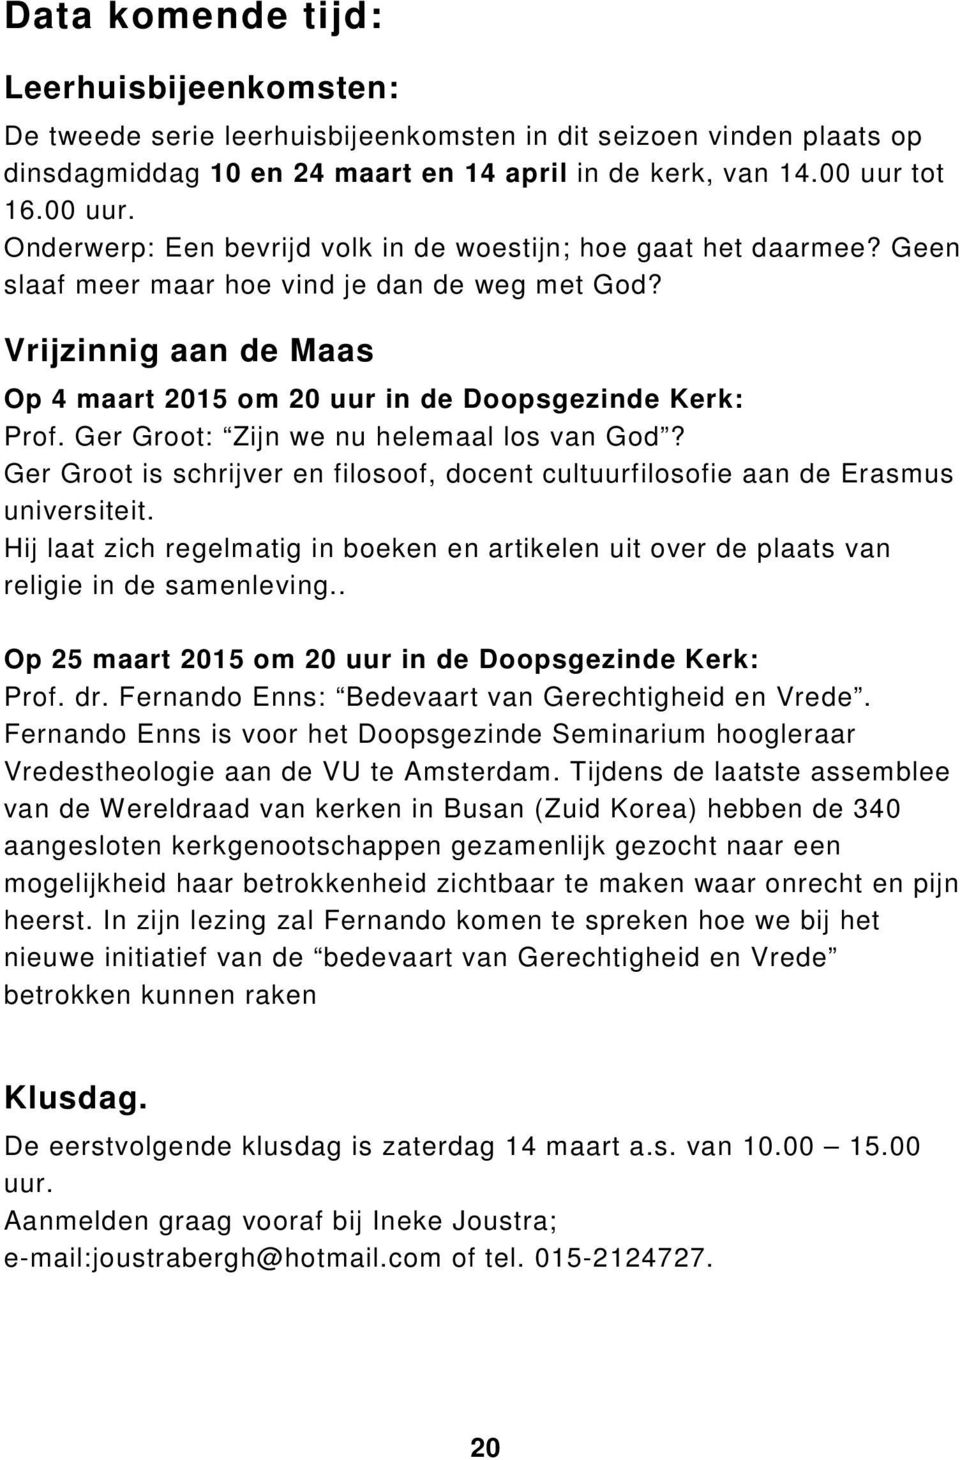 Vrijzinnig aan de Maas Op 4 maart 2015 om 20 uur in de Doopsgezinde Kerk: Prof. Ger Groot: Zijn we nu helemaal los van God?